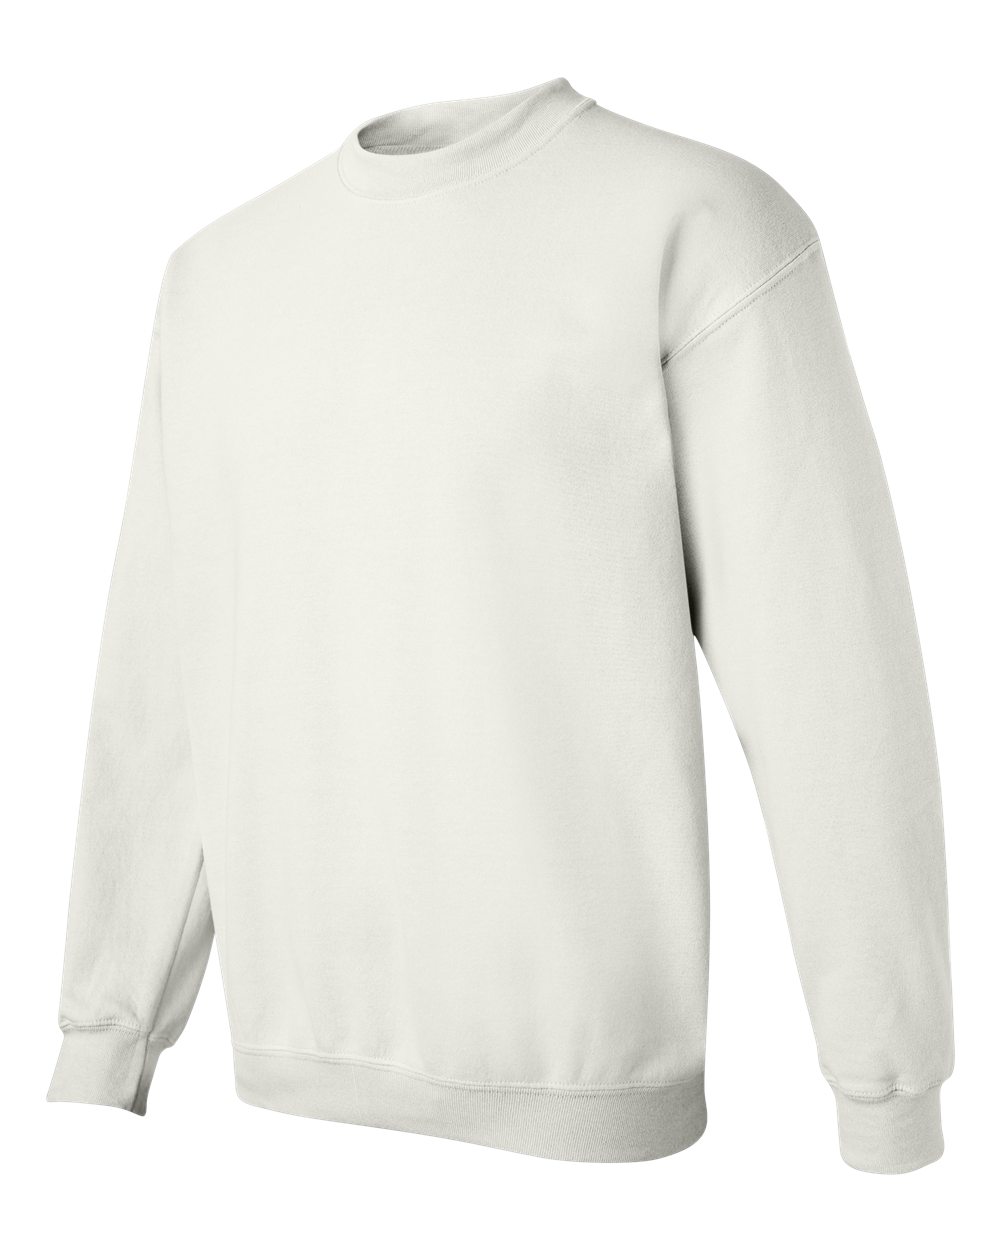 Gildan Heavy Blend Crew Neck sweater GI18000 White